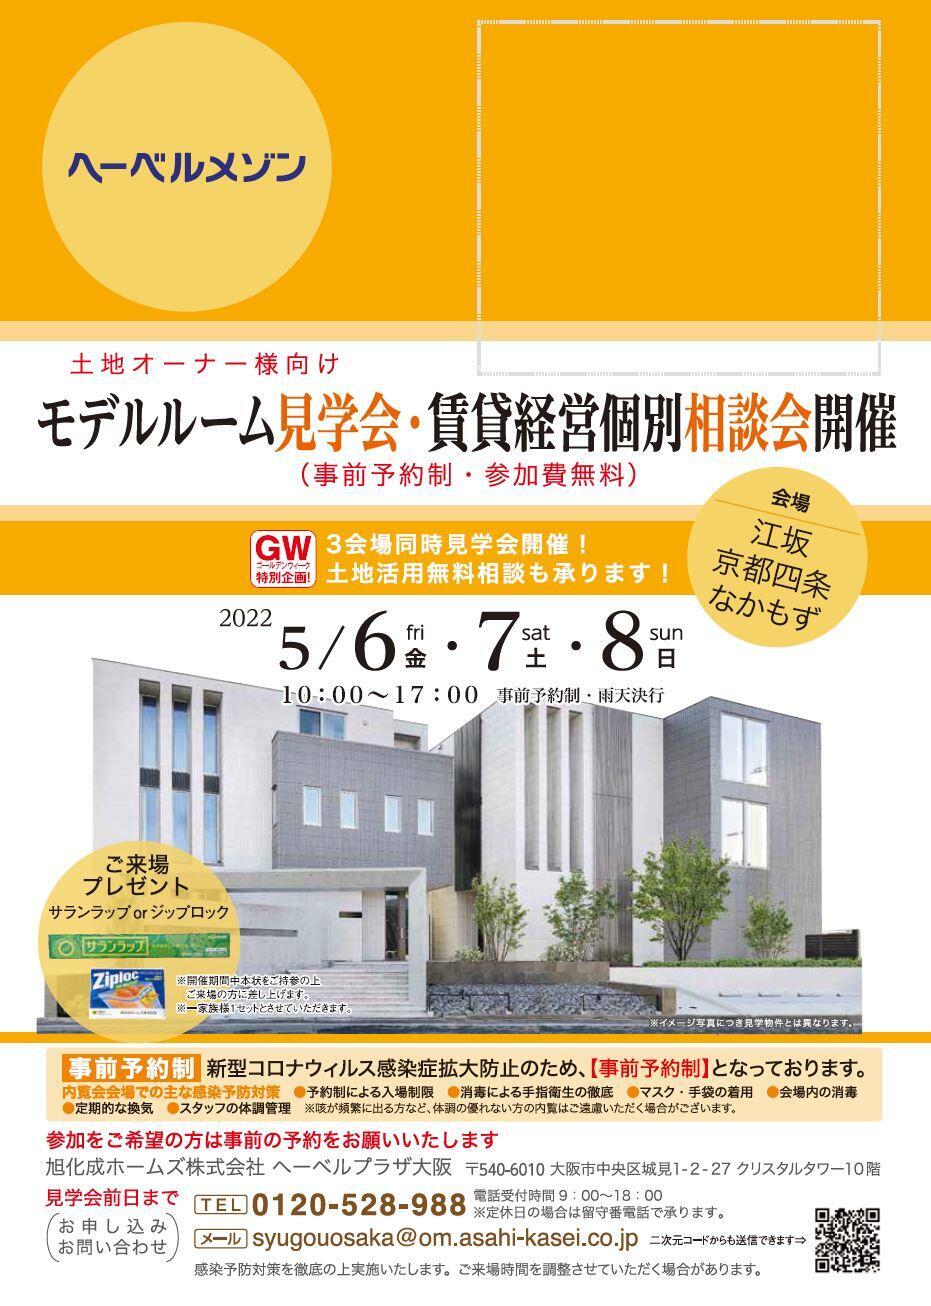 https://www.asahi-kasei.co.jp/maison/hebelplaza/blog/18/osaka/item/2022/20220425-2.jpg